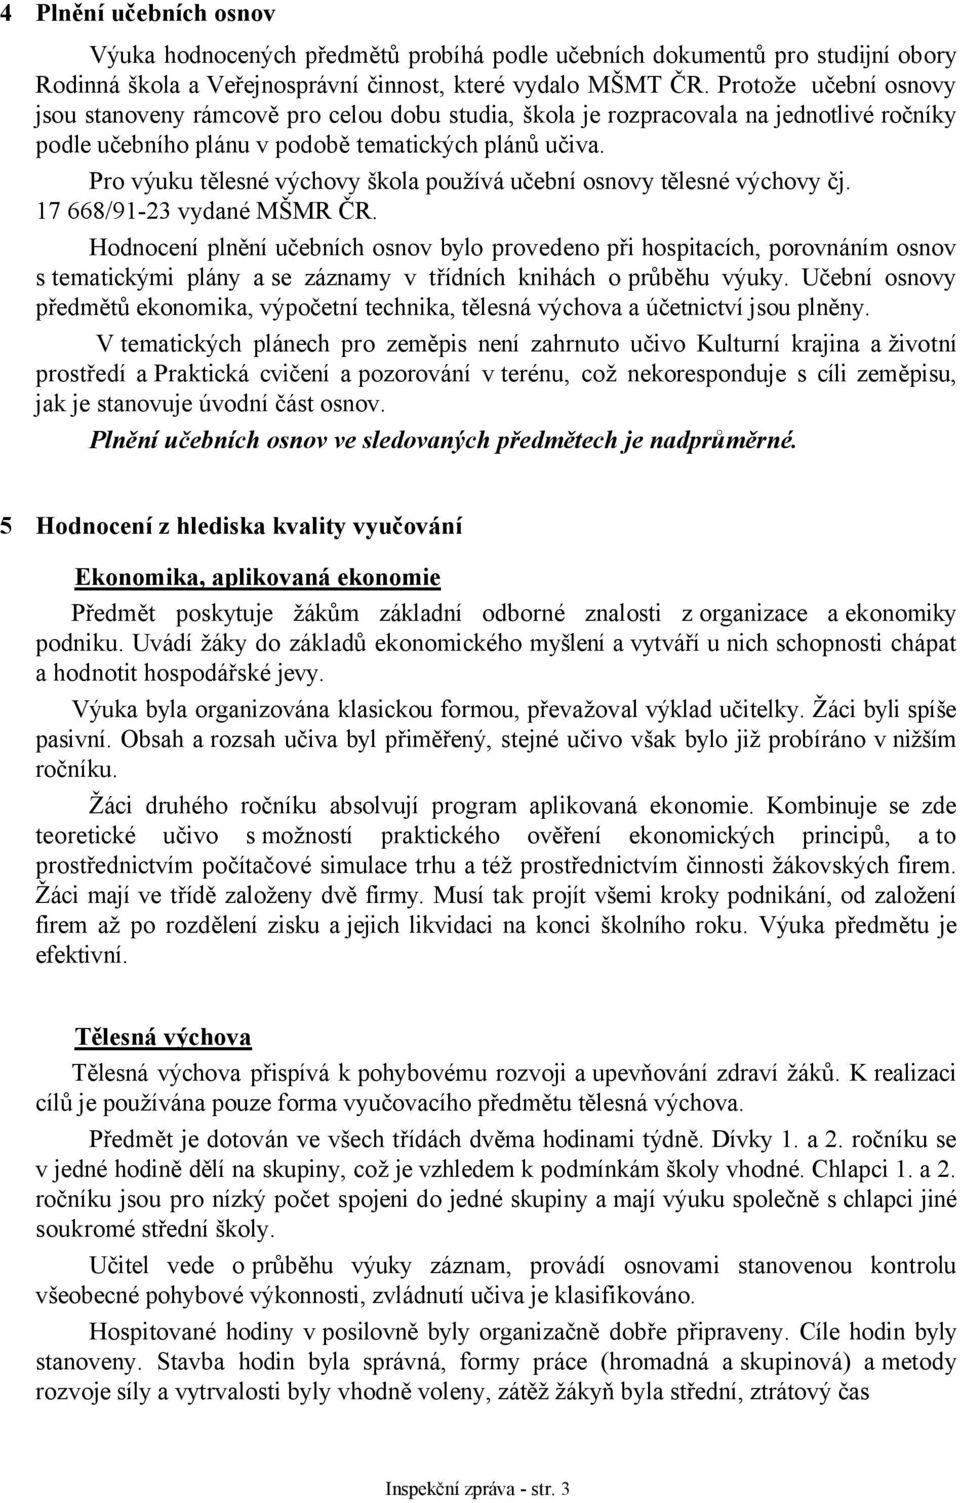 Pro výuku tělesné výchovy škola používá učební osnovy tělesné výchovy čj. 17 668/91-23 vydané MŠMR ČR.